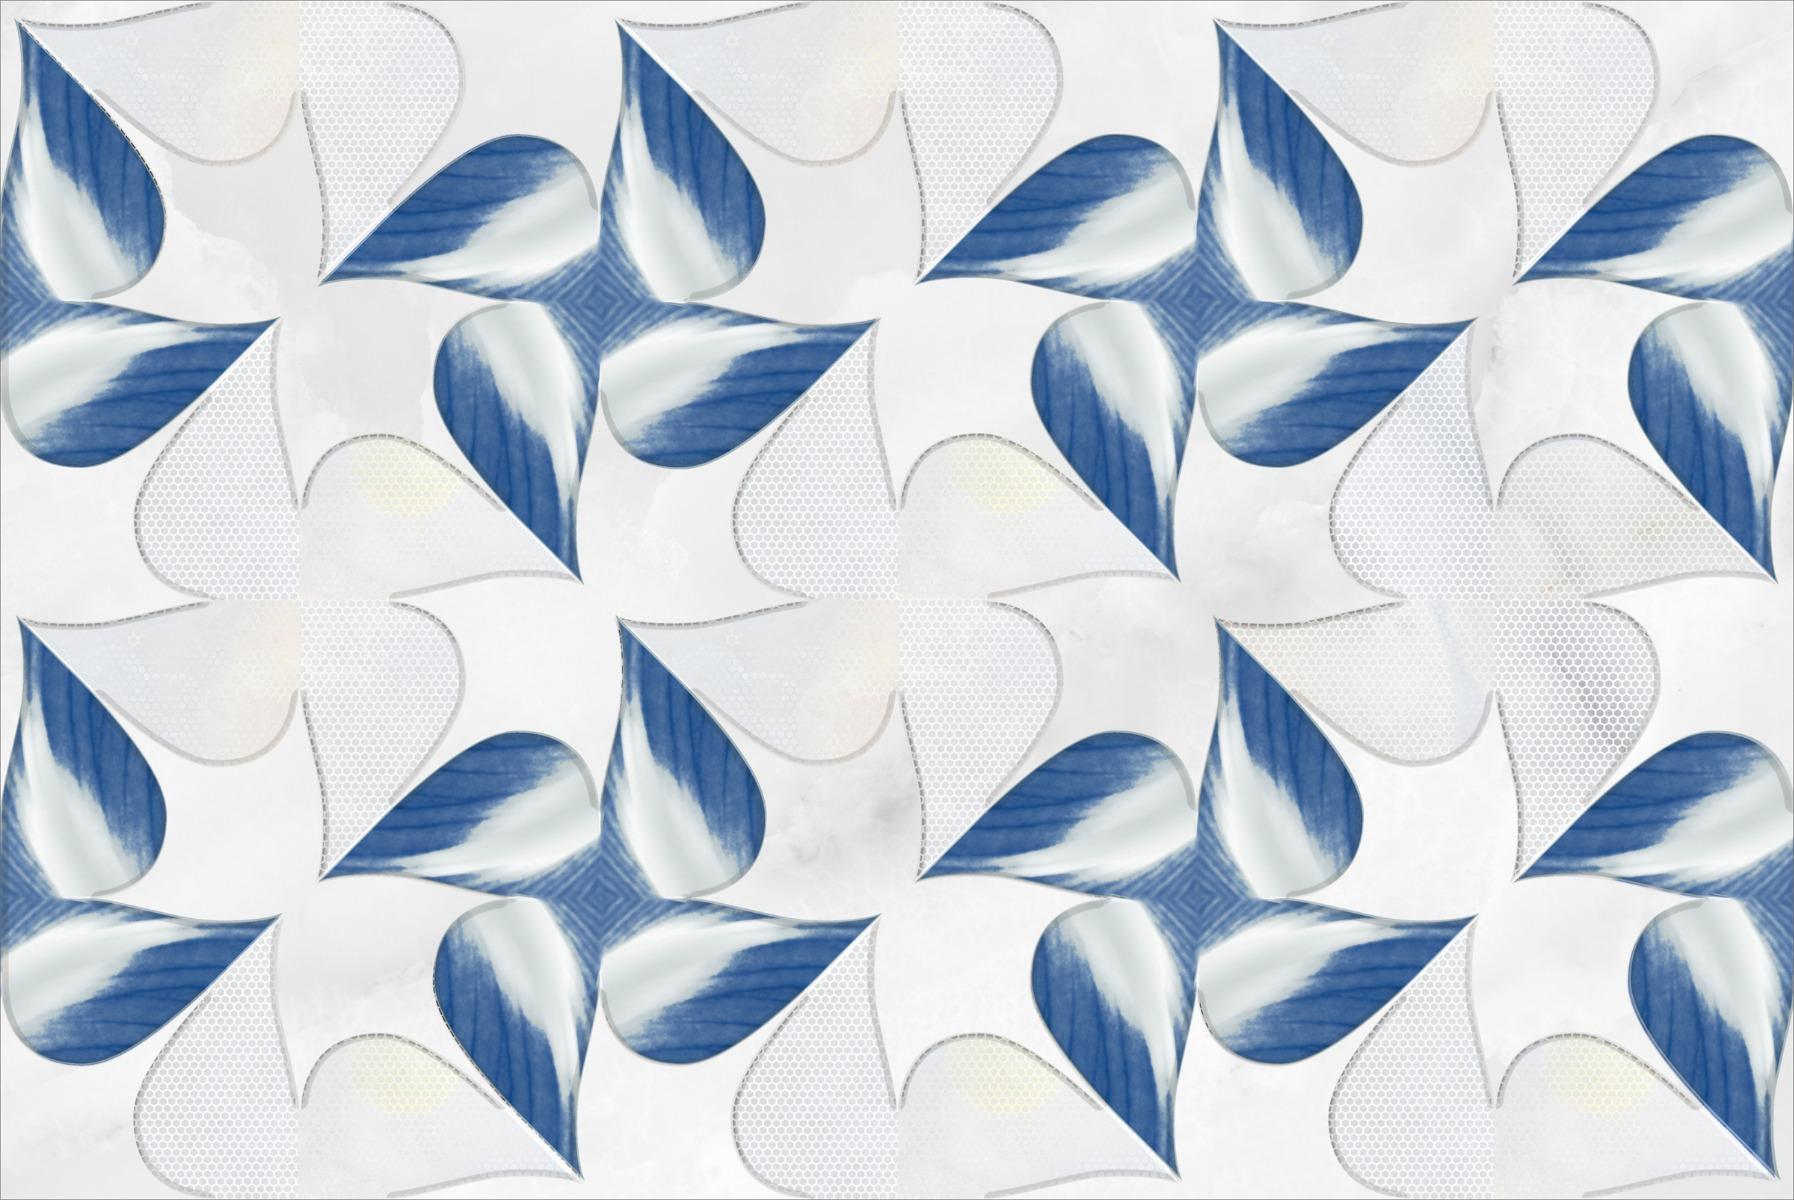 White Tiles for Bathroom Tiles, Kitchen Tiles, Accent Tiles, Dining Room Tiles